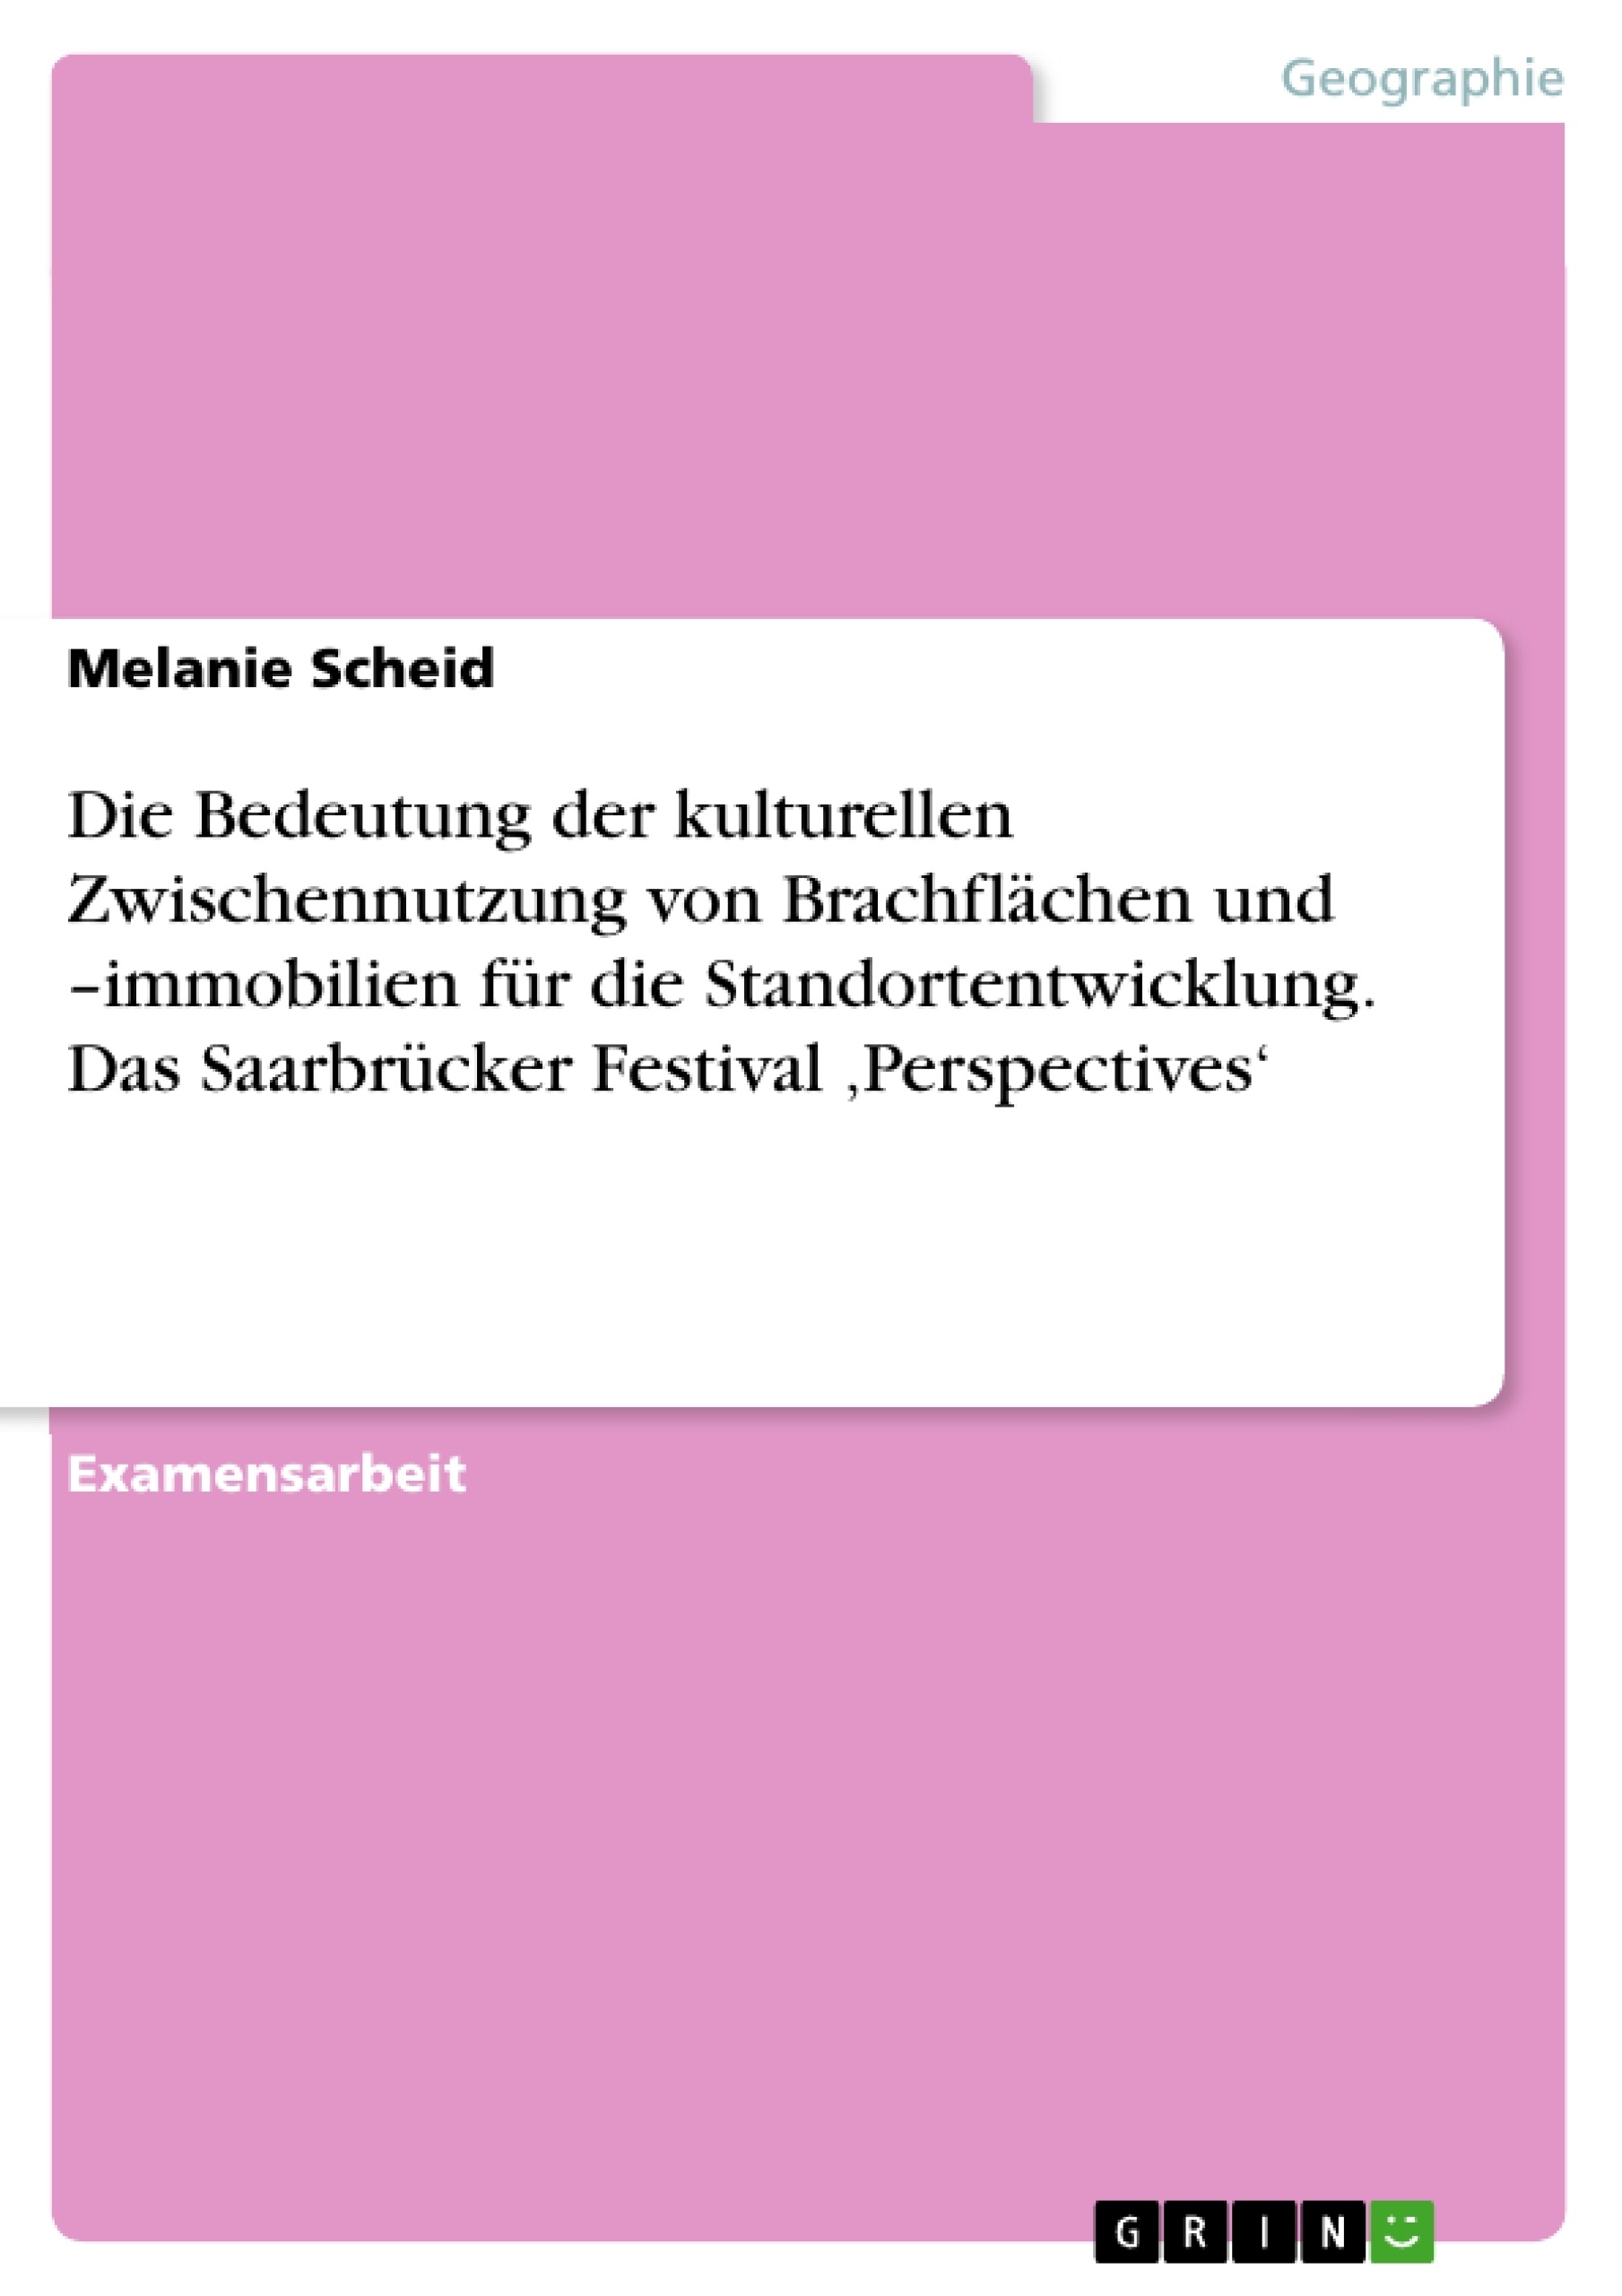 Titre: Die Bedeutung der kulturellen Zwischennutzung von Brachflächen und  –immobilien für die Standortentwicklung. Das Saarbrücker Festival ‚Perspectives‘